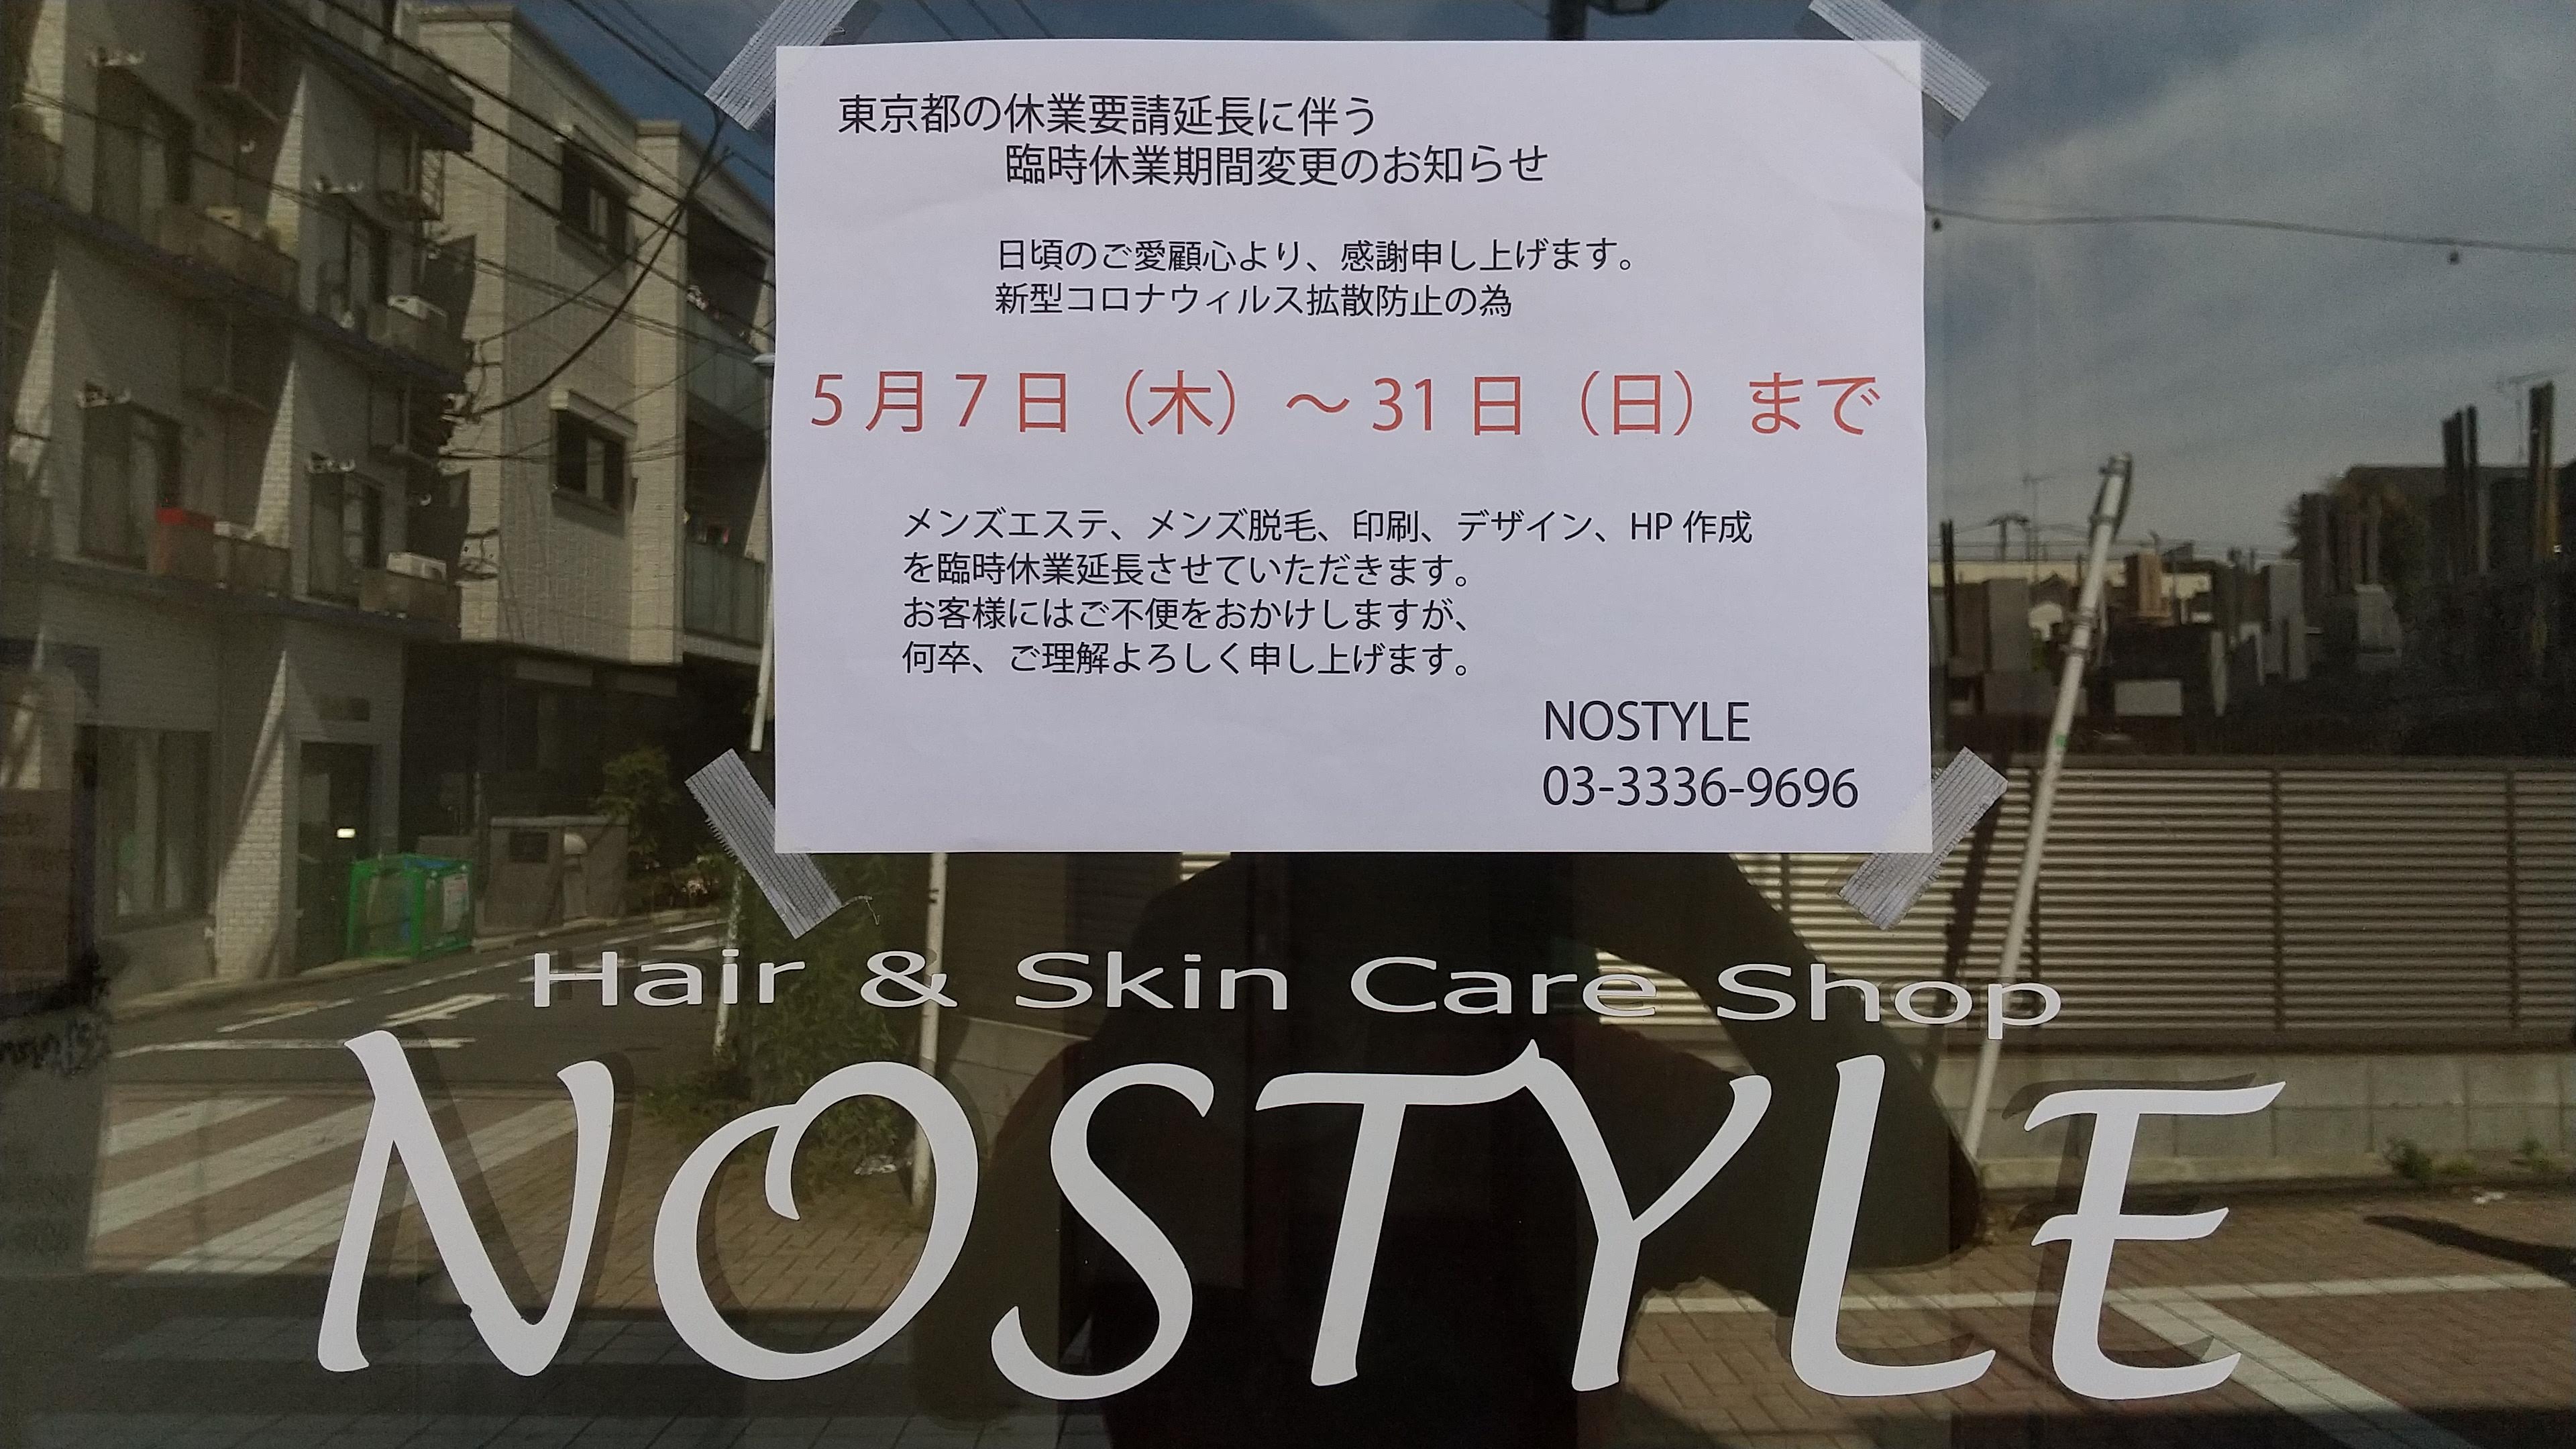 http://www.nostyle.jp/hair/images/DSC_1533.jpg